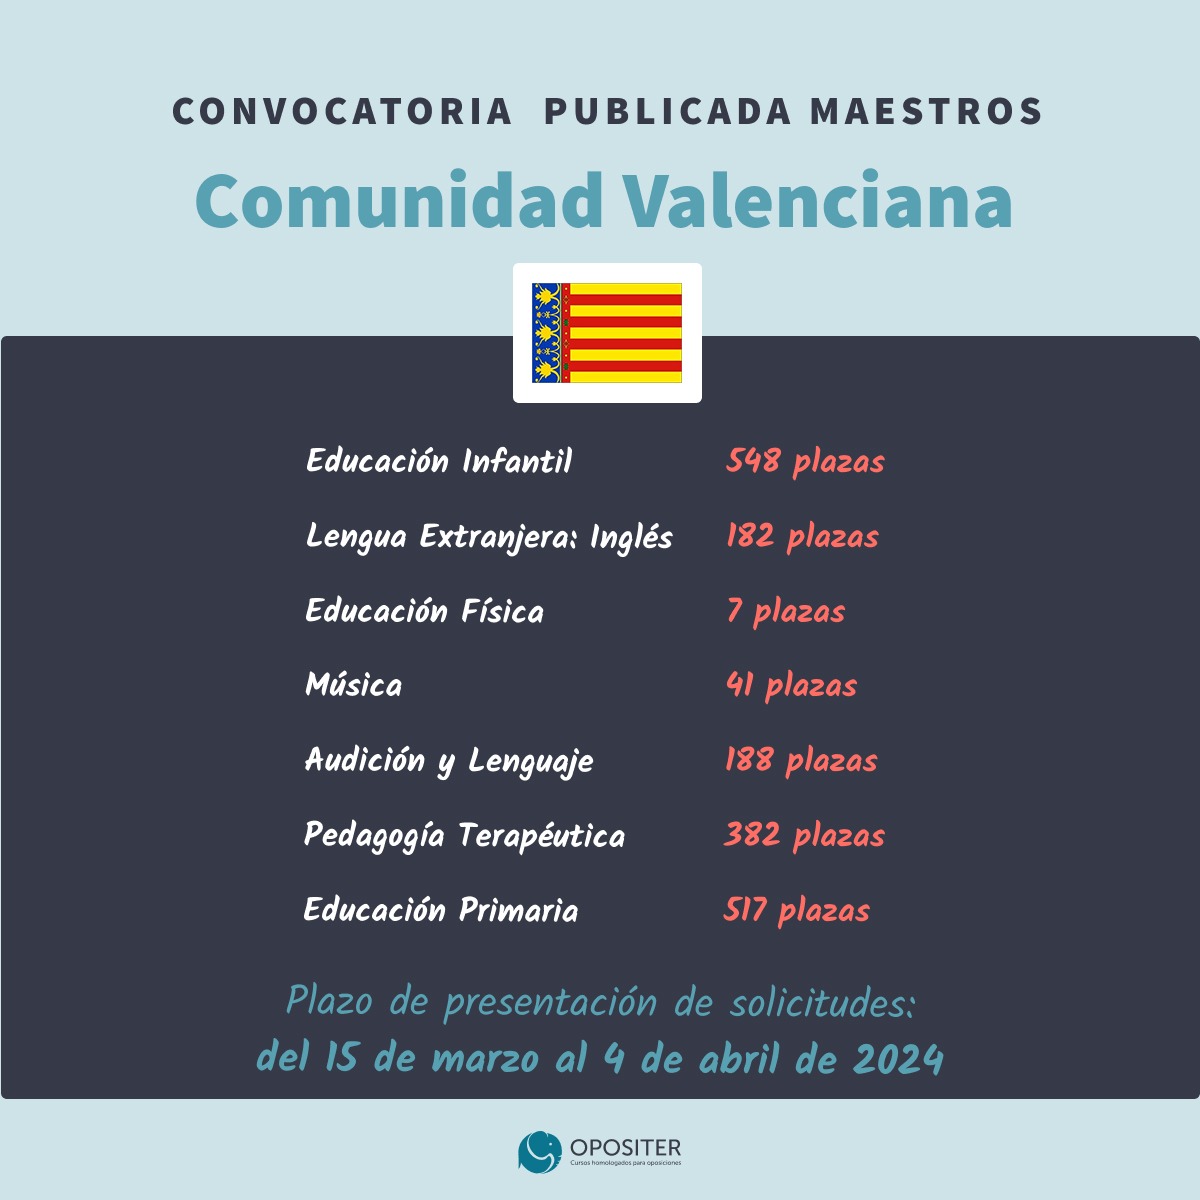 Convocatoria de Oposición de Maestros Comunidad Valenciana